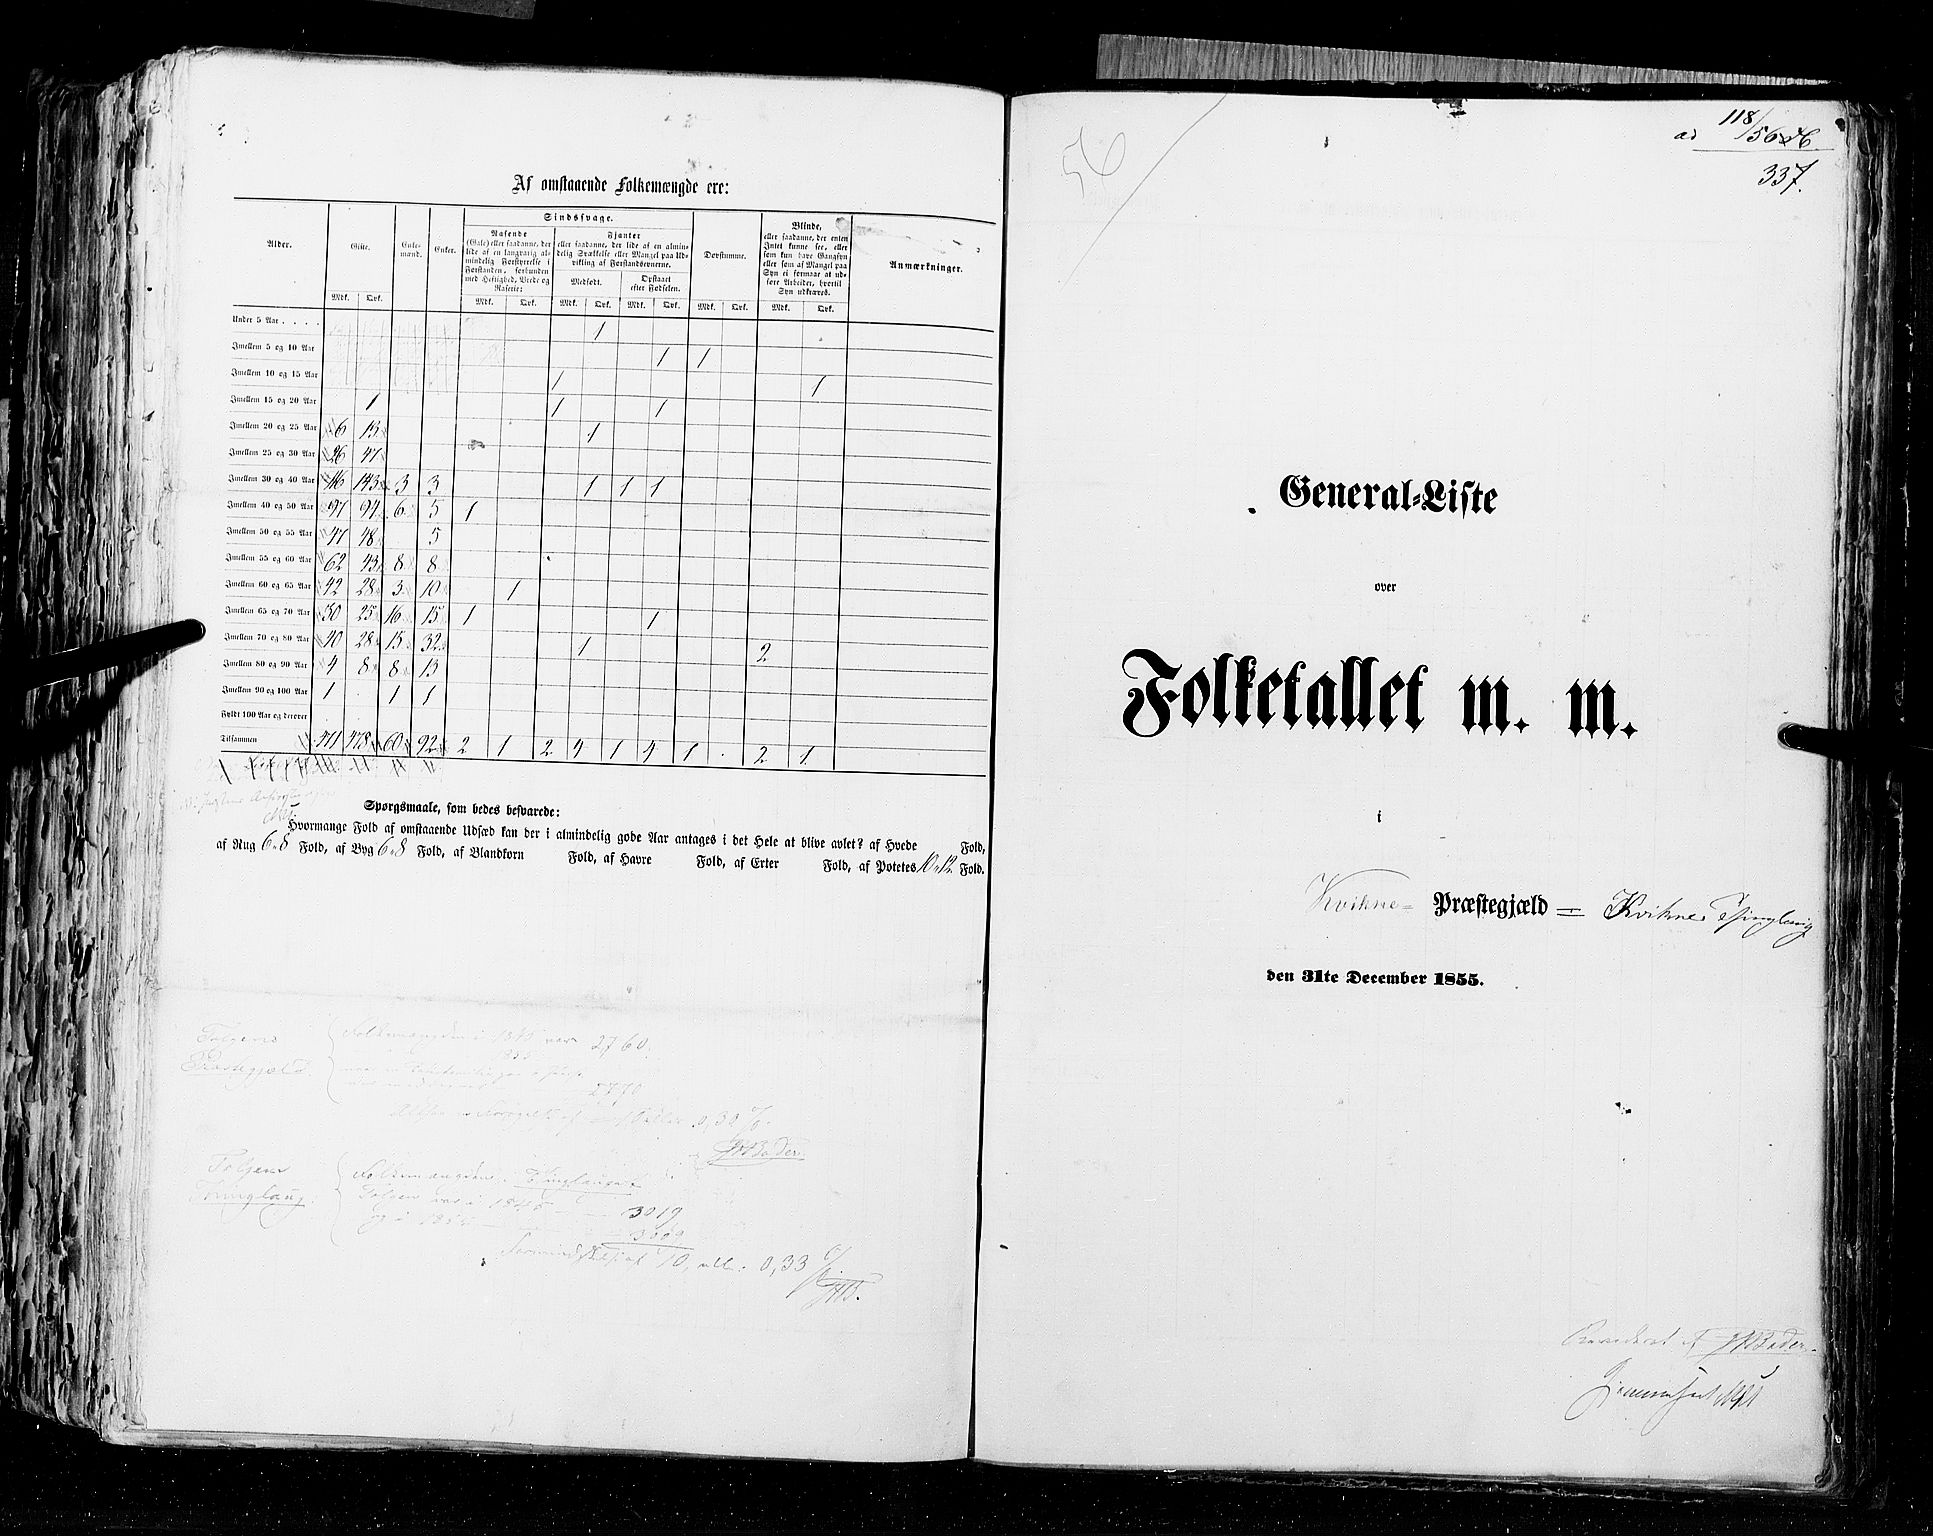 RA, Folketellingen 1855, bind 1: Akershus amt, Smålenenes amt og Hedemarken amt, 1855, s. 337